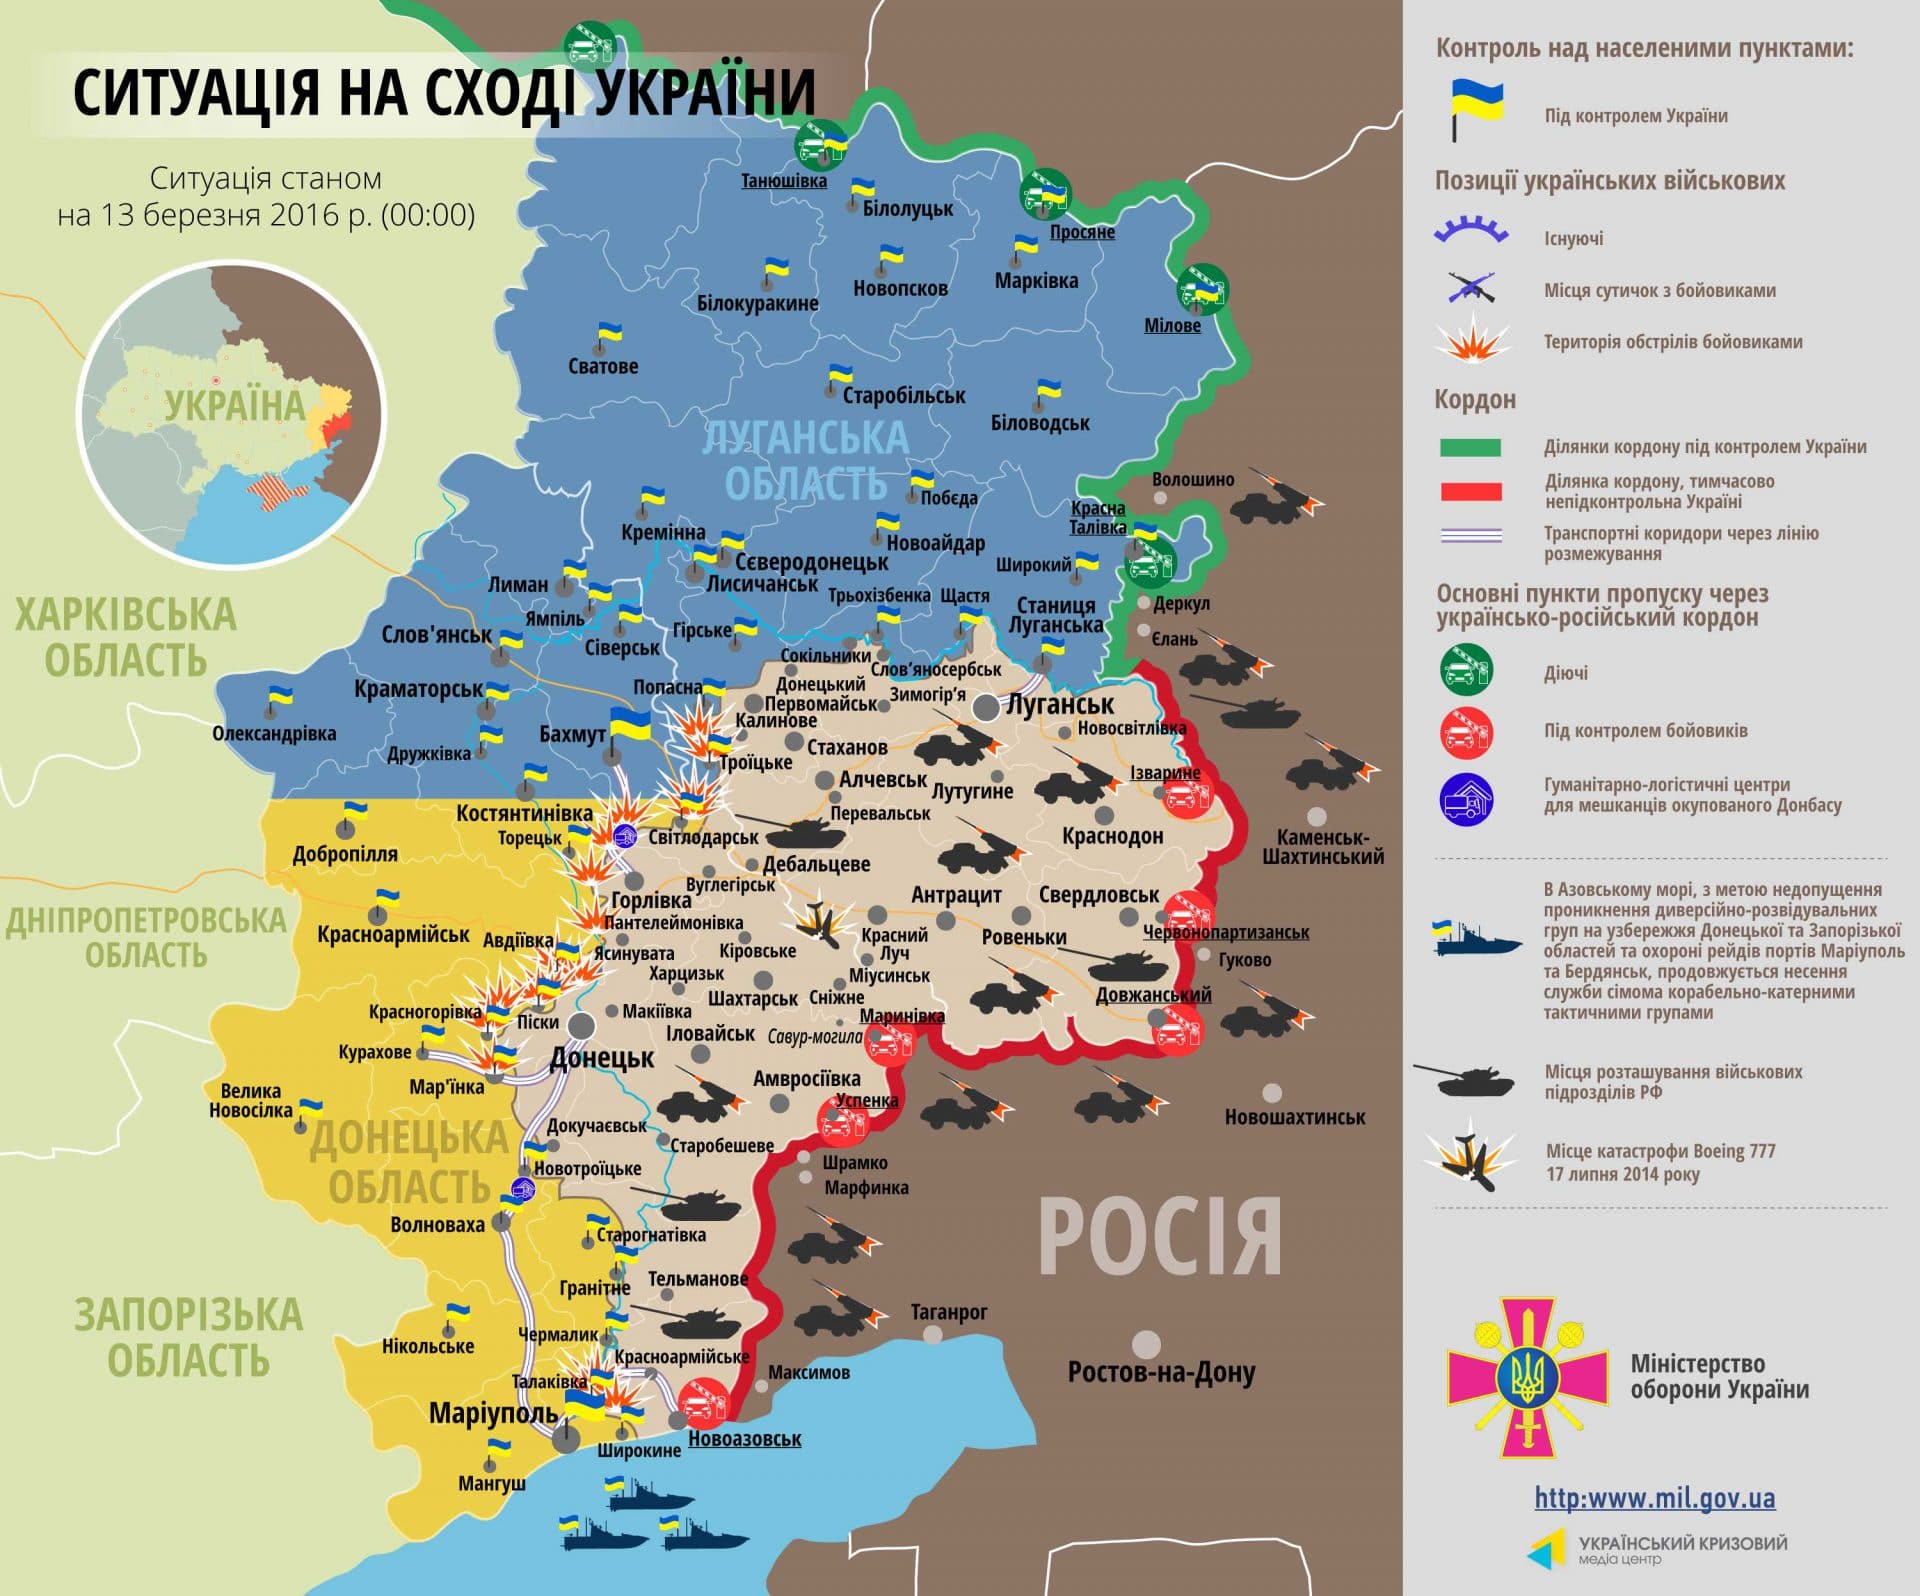 Władze Ukrainy wstrzymują ruch towarowy z separatystycznym Donbasem